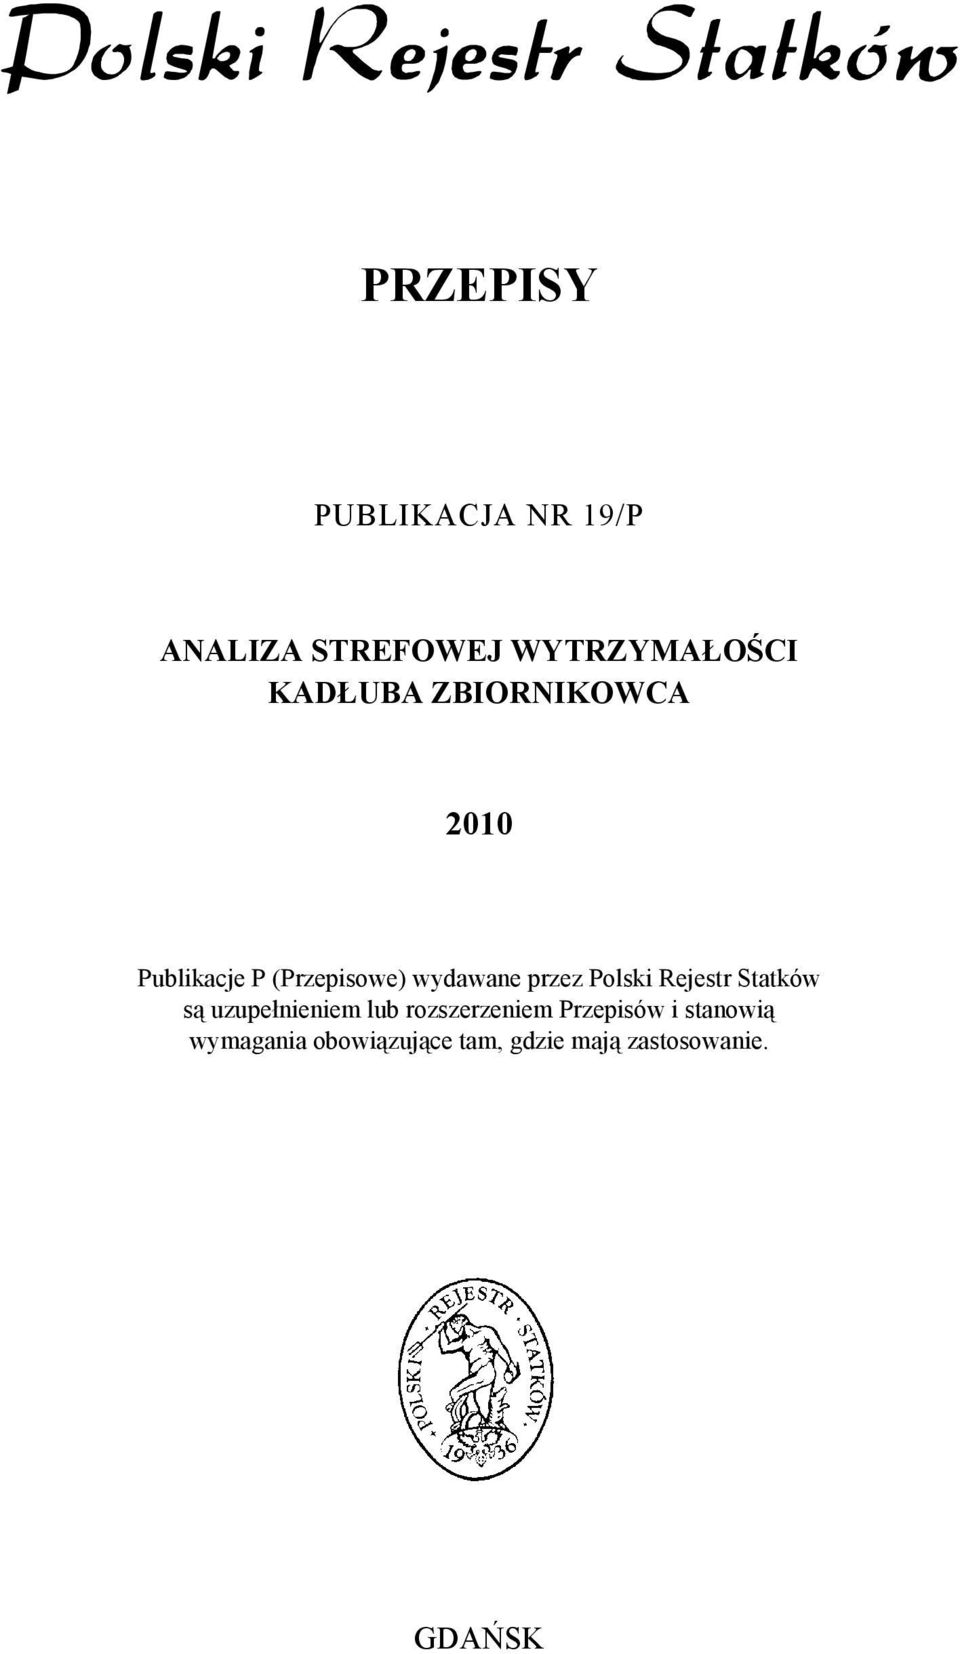 Polski Rejestr Statków są uzupełnieniem lub rozszerzeniem